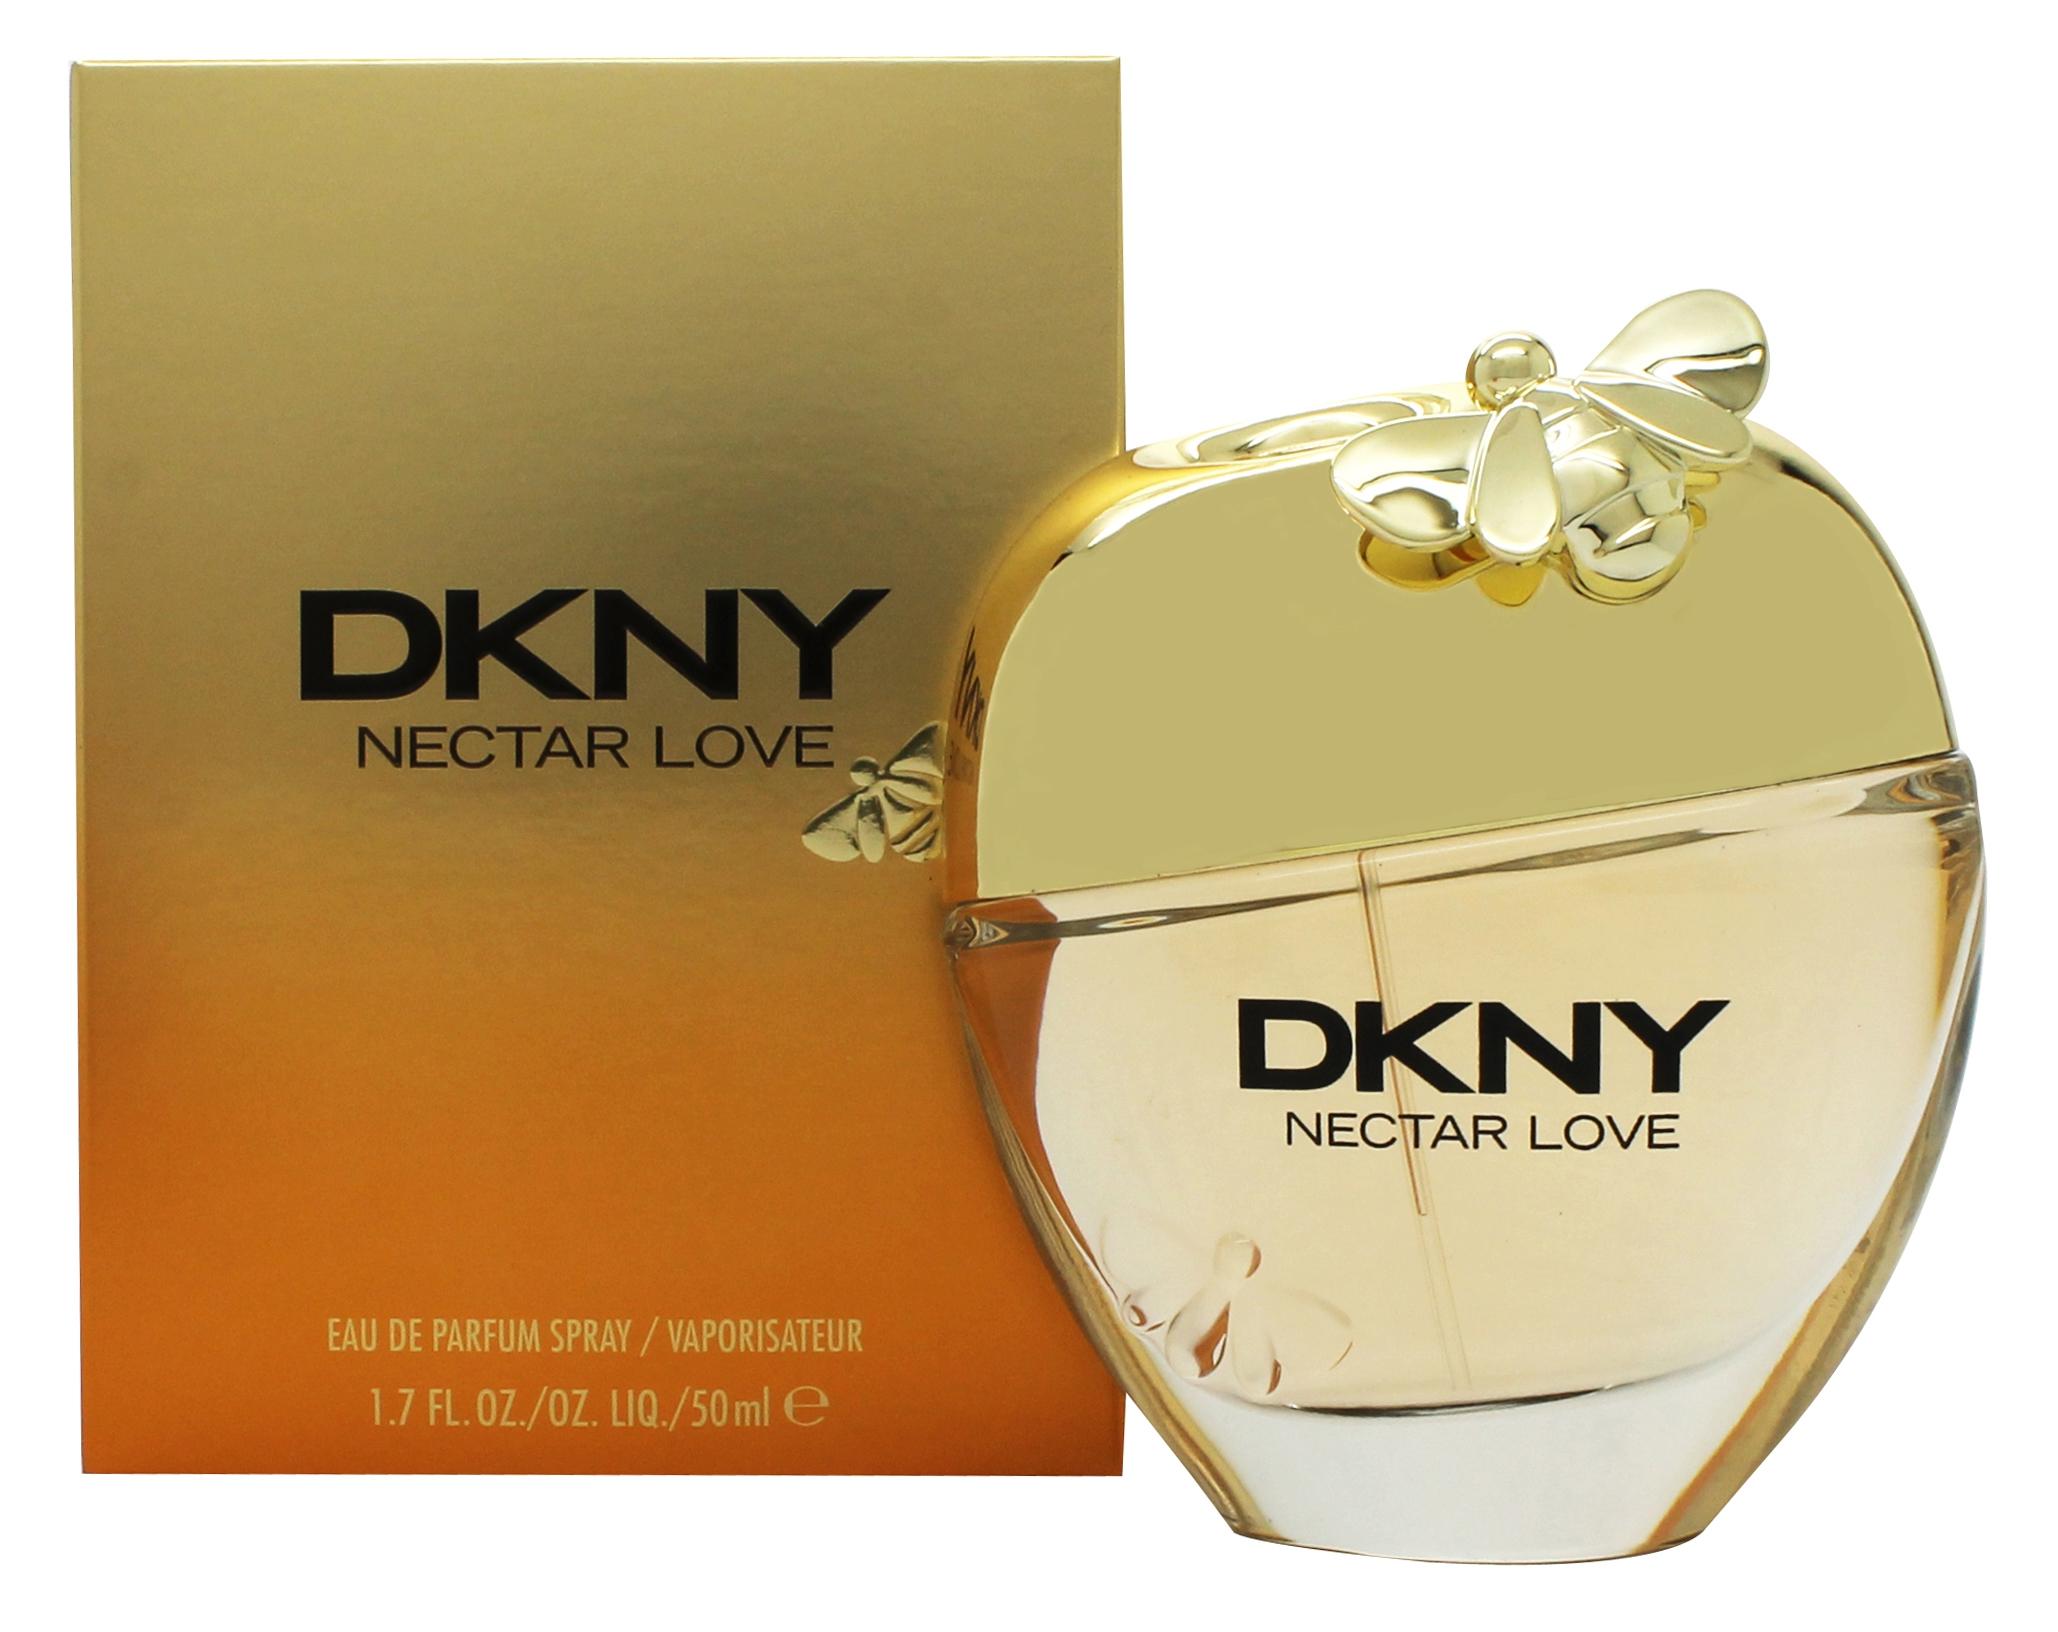 DKNY Nectar Love Eau de Parfum 50ml Spray